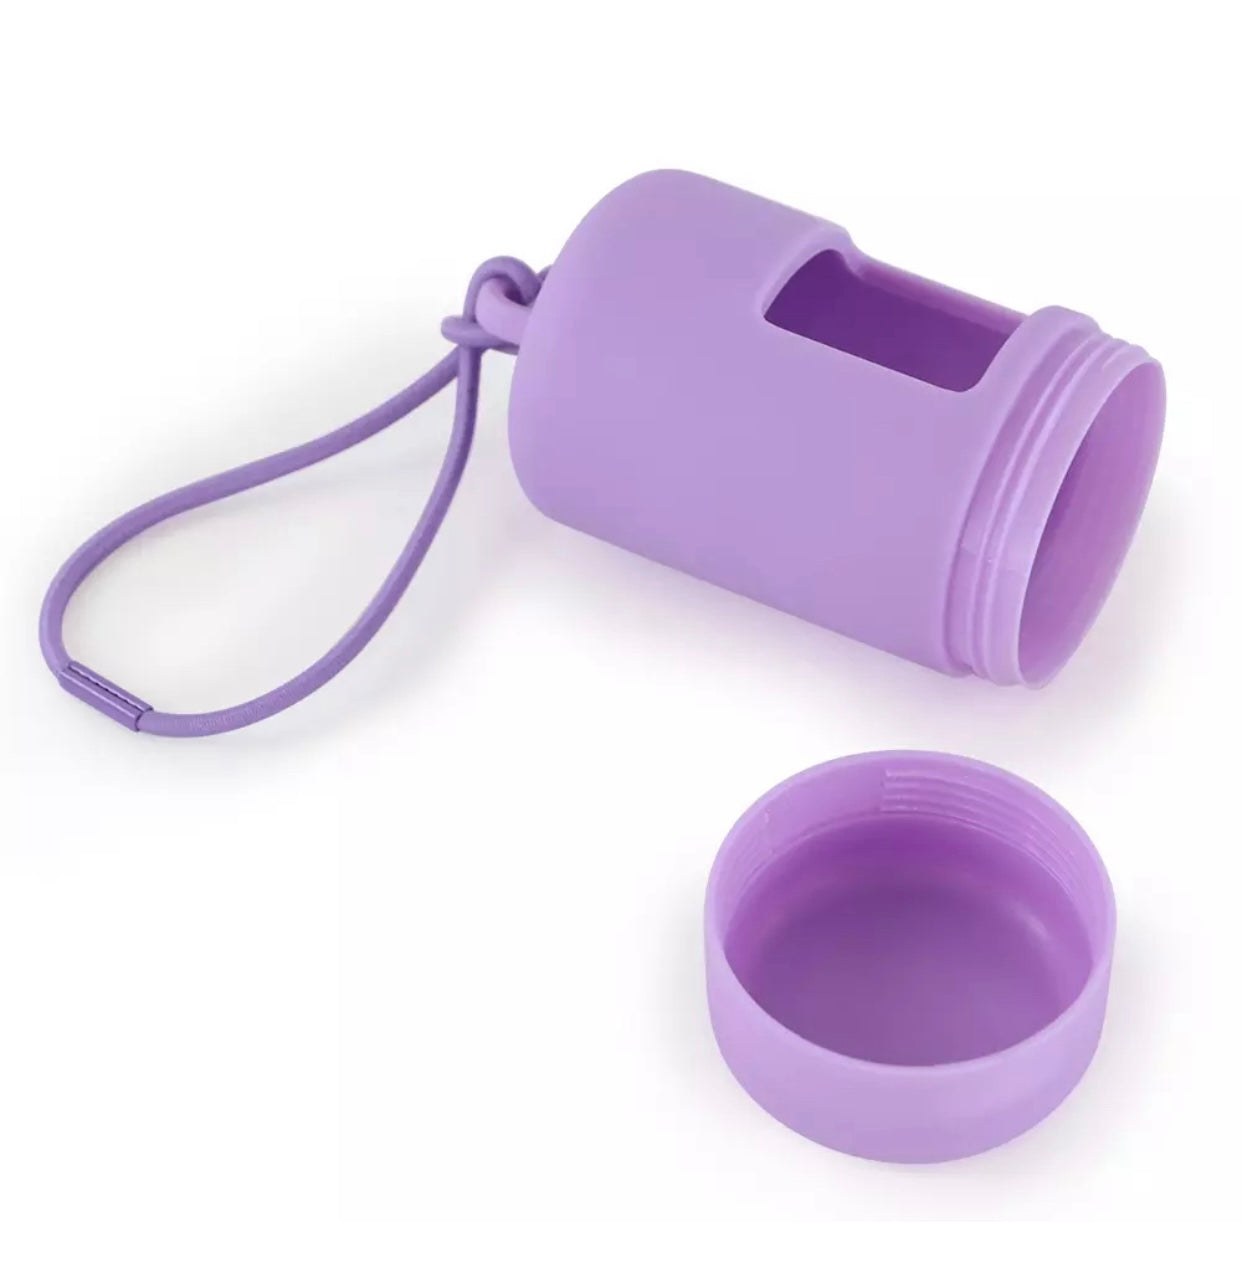 Waterproof Waste Bag Holder - Purple